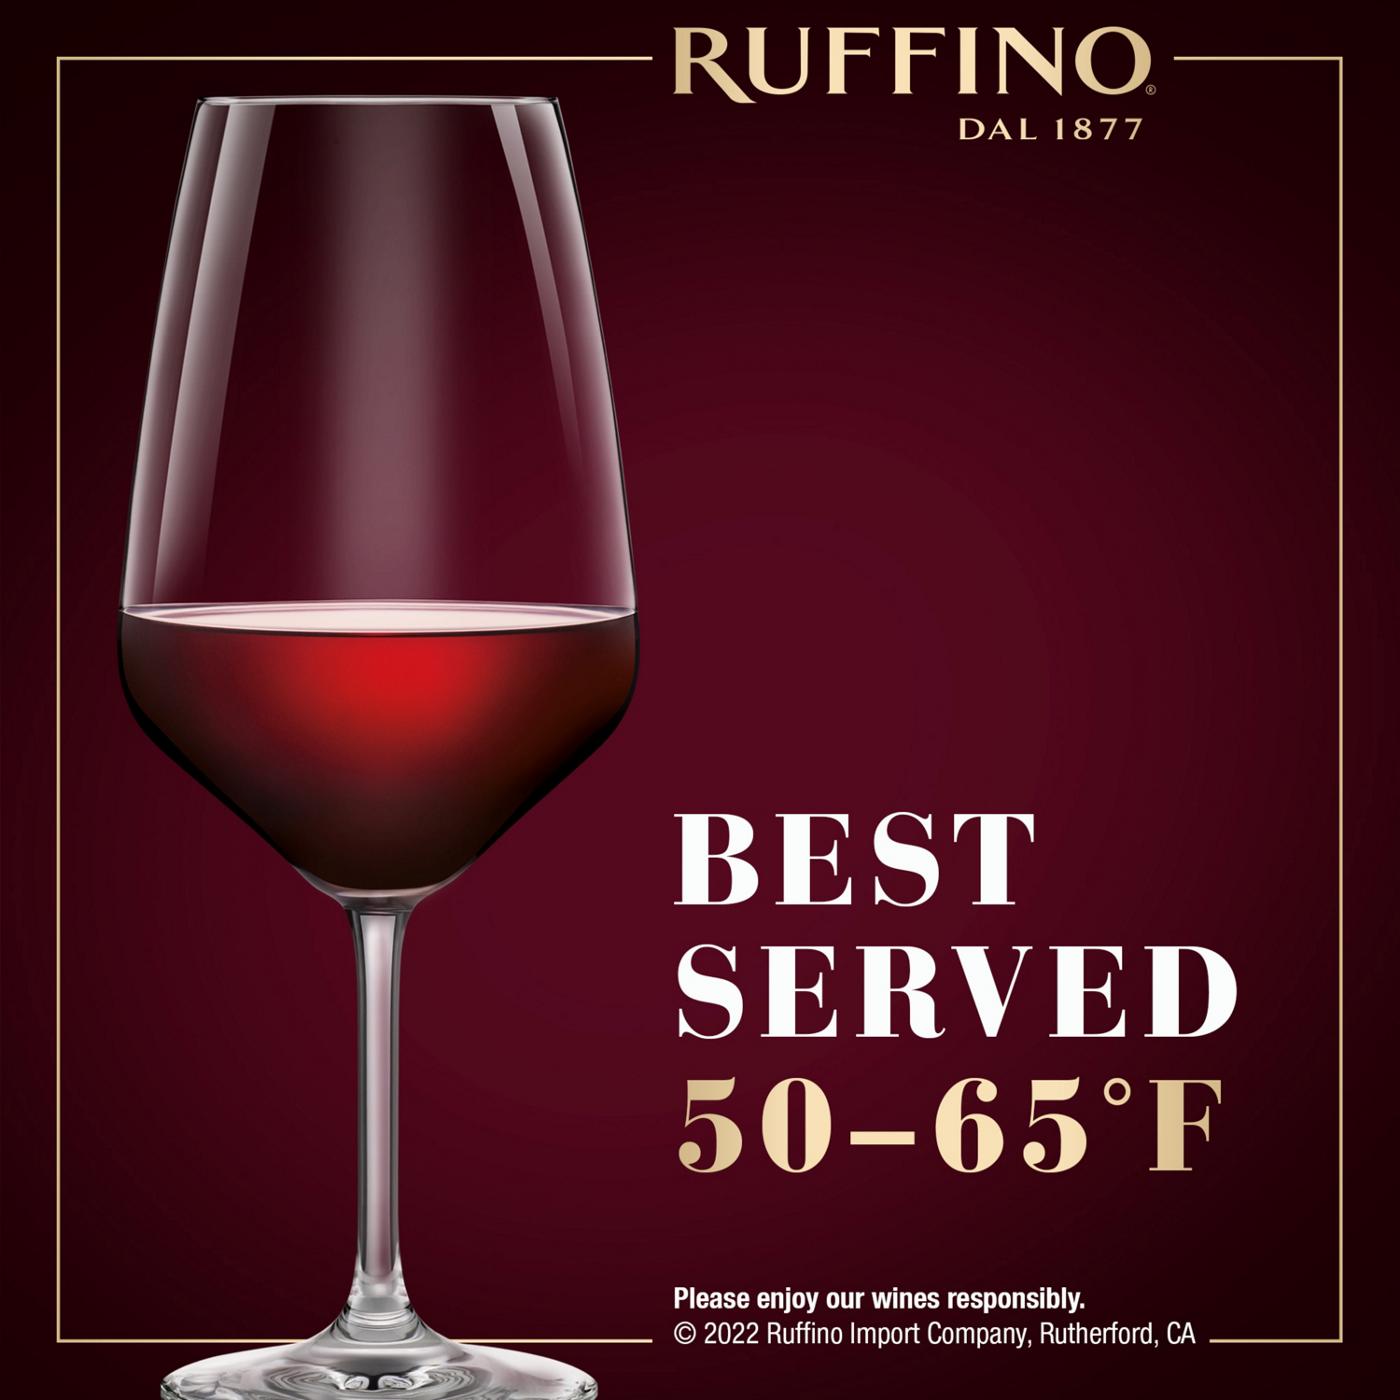 Ruffino Greppone Mazzi Brunello Di Montalcino DOCG Sangiovese Grosso, Italian Red Wine 750 mL Bottle; image 6 of 11